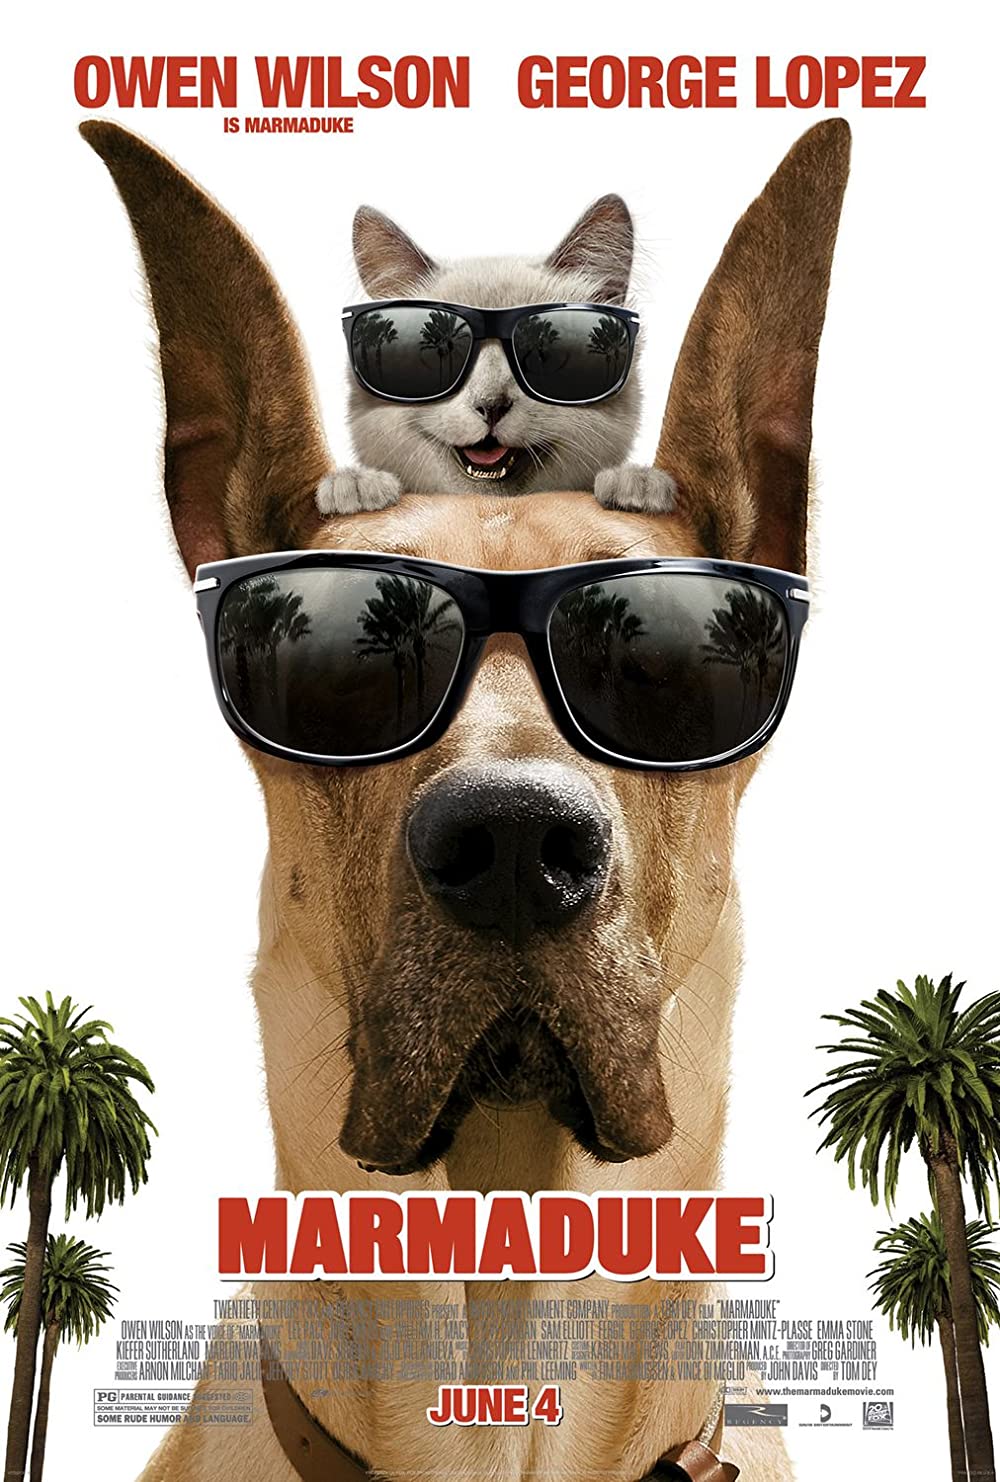 ดูหนังออนไลน์ฟรี Marmaduke (2010) มาร์มาดู๊ค บิ๊กตูบซูเปอร์ป่วน